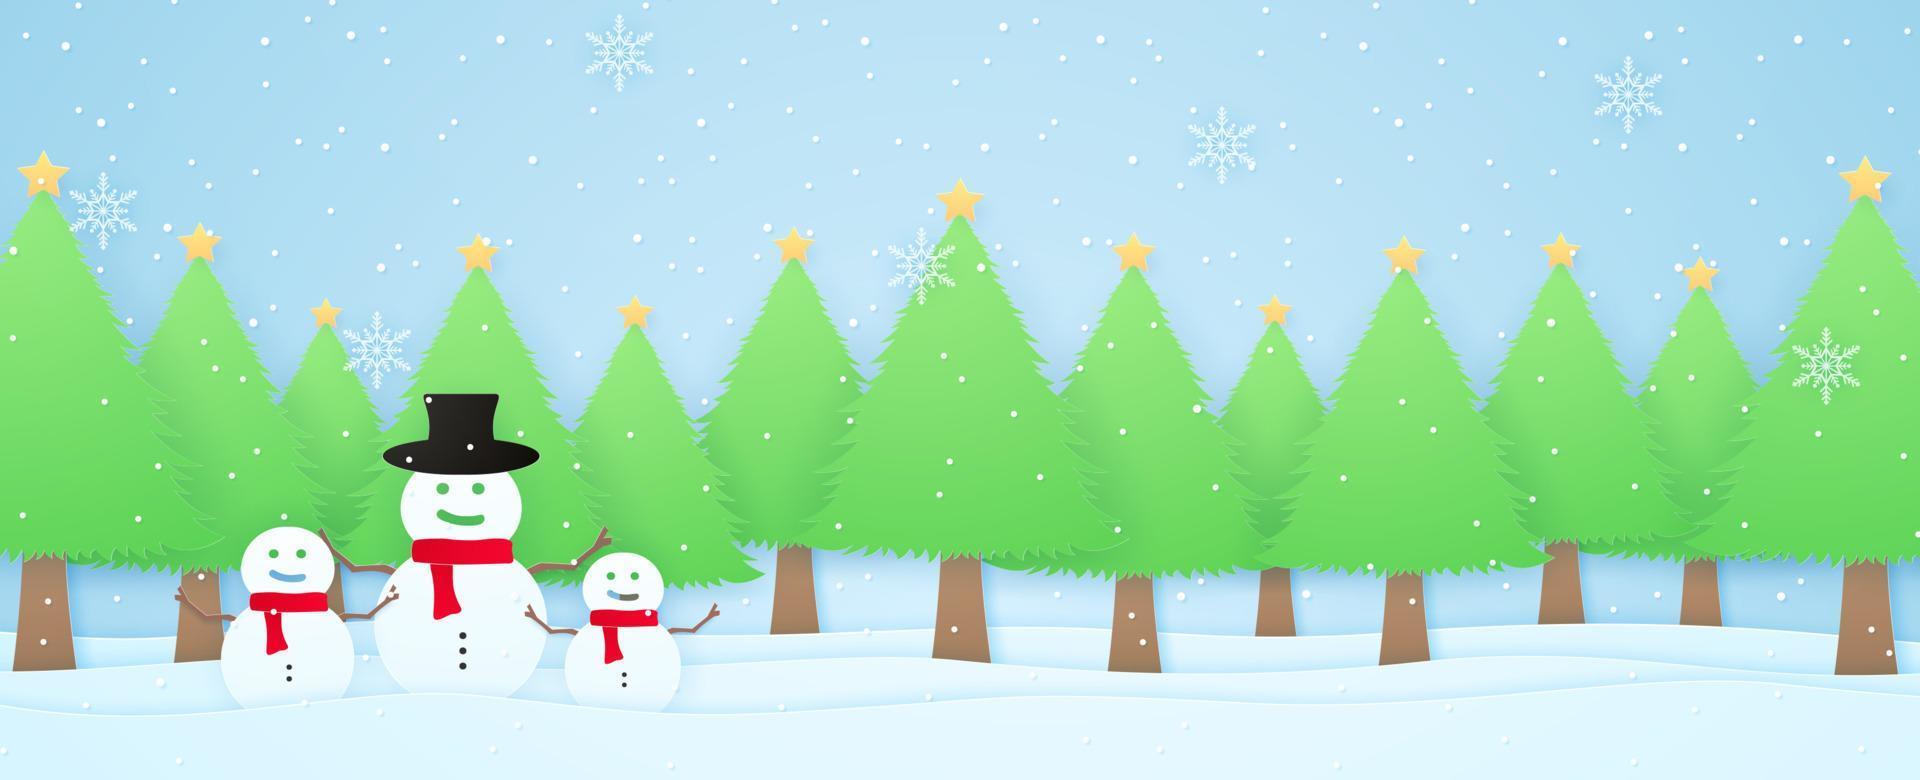 paysage d'hiver, arbres de noël avec bonhomme de neige sur neige avec chutes de neige et flocons de neige, style art papier vecteur